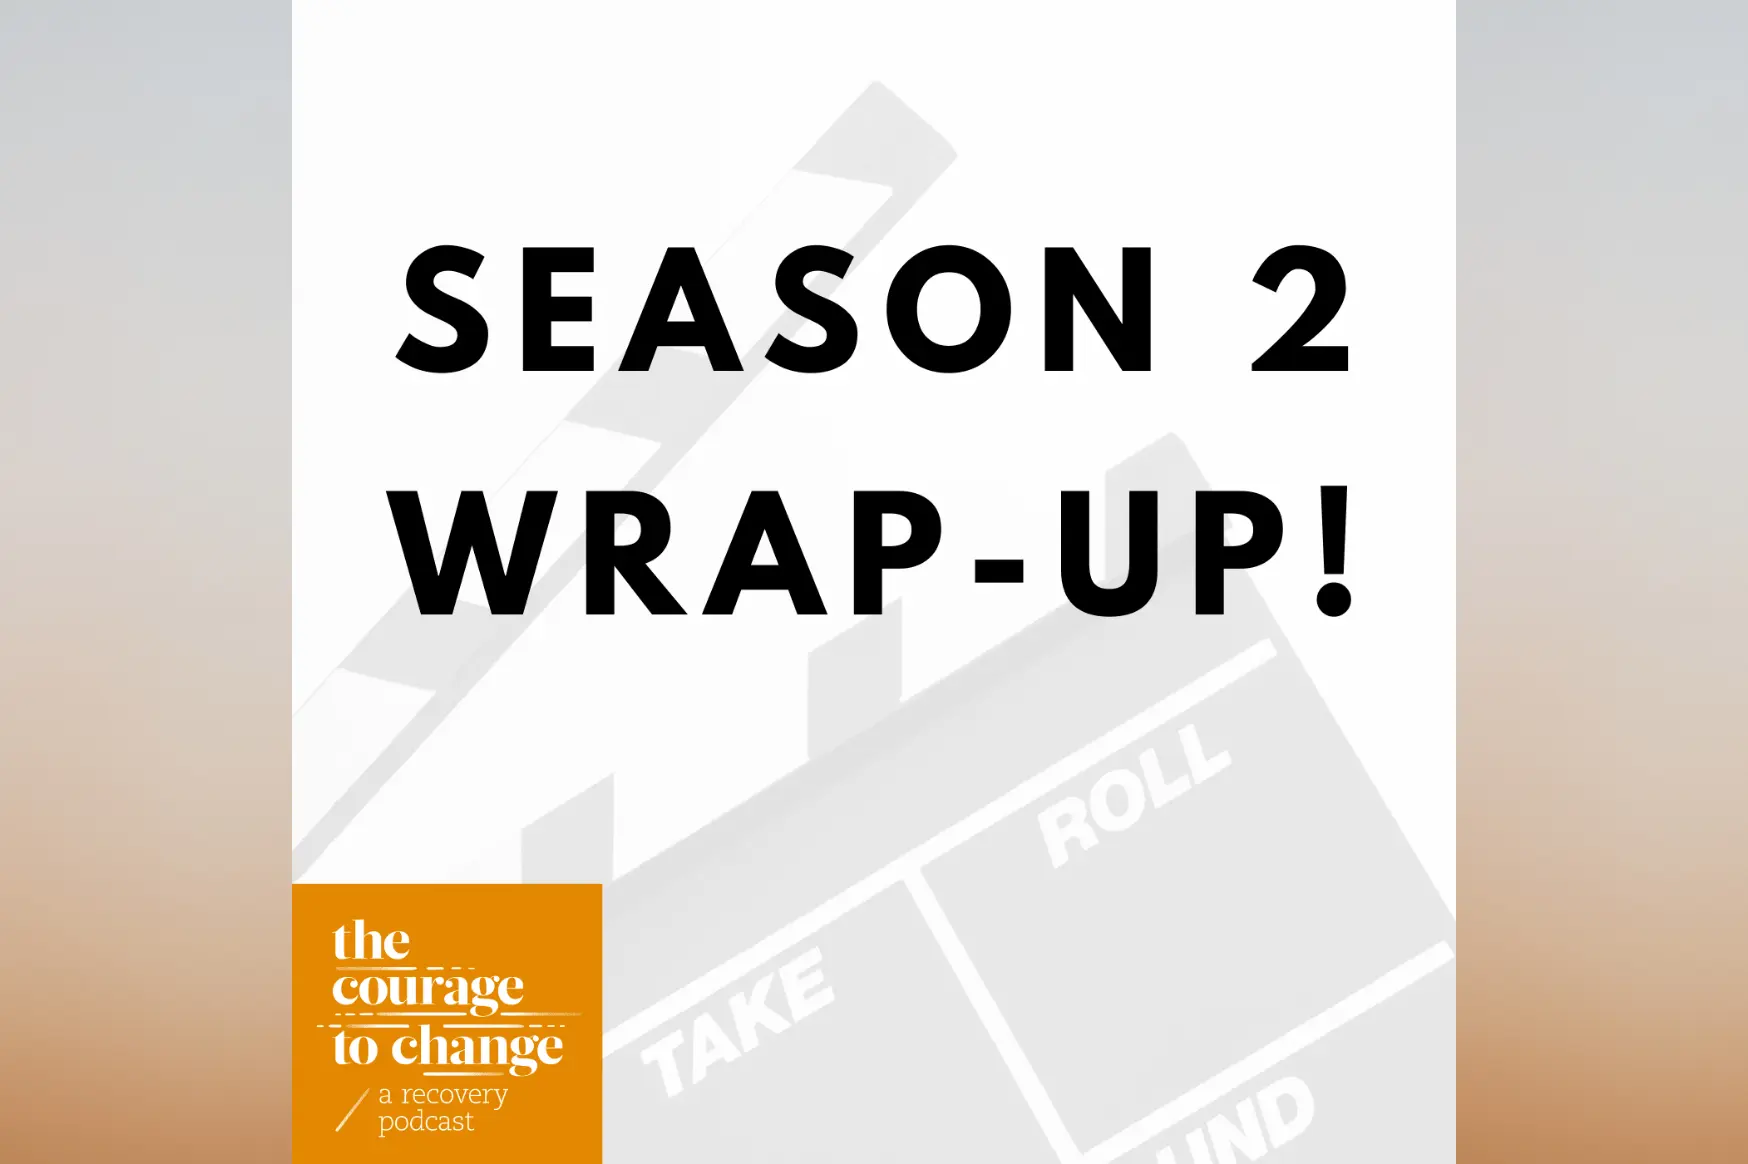 Season 2 Wrap-Up!